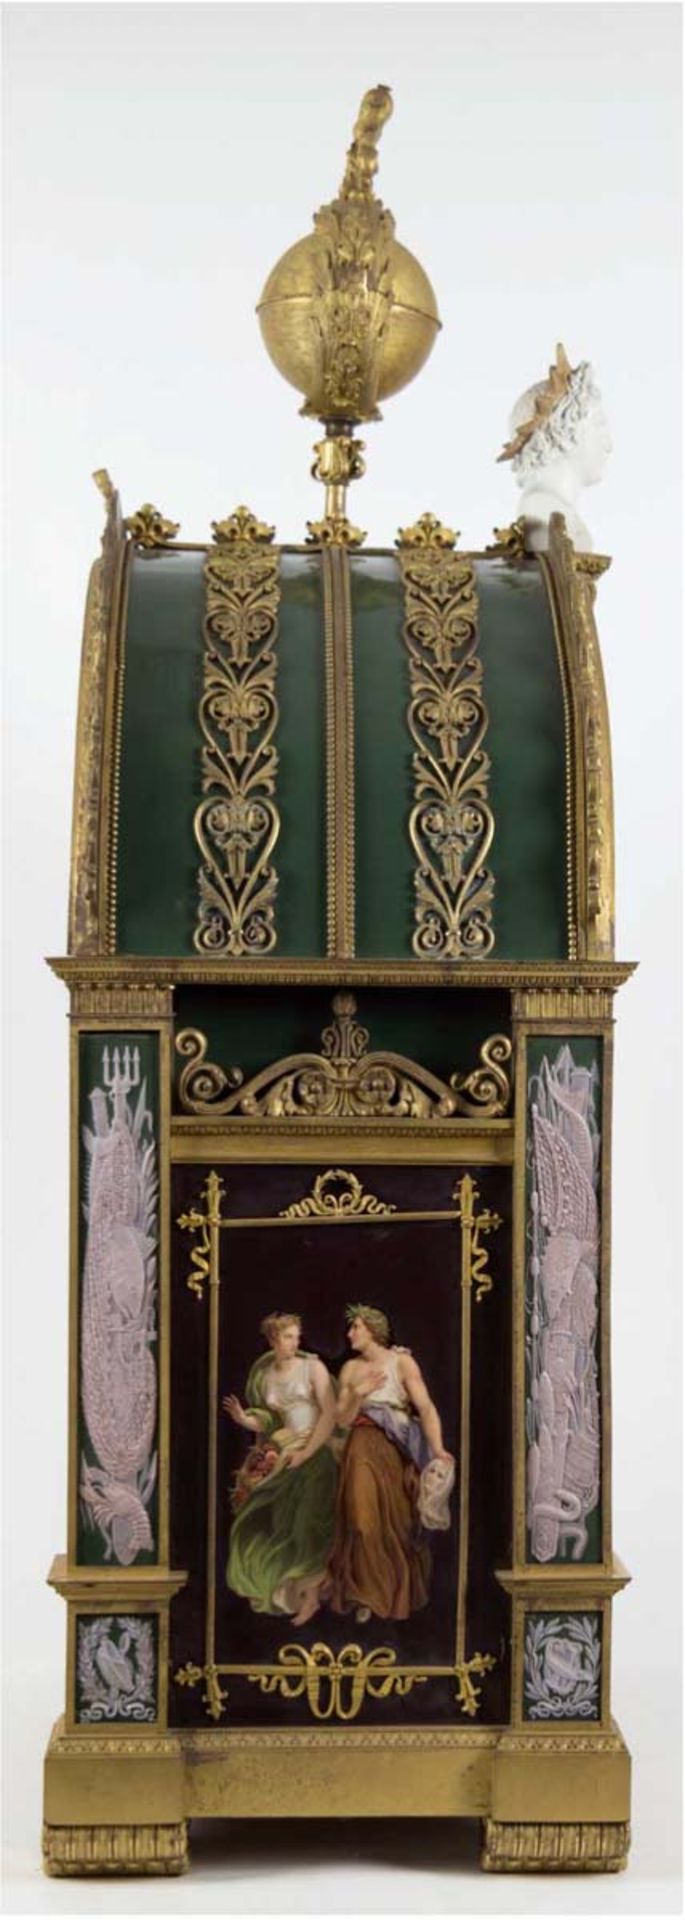 Große imposante Tischuhr, Frankreich um 1860-1880, Messing mit eingelegtenPorzellantafeln, gemarkt - Bild 2 aus 4